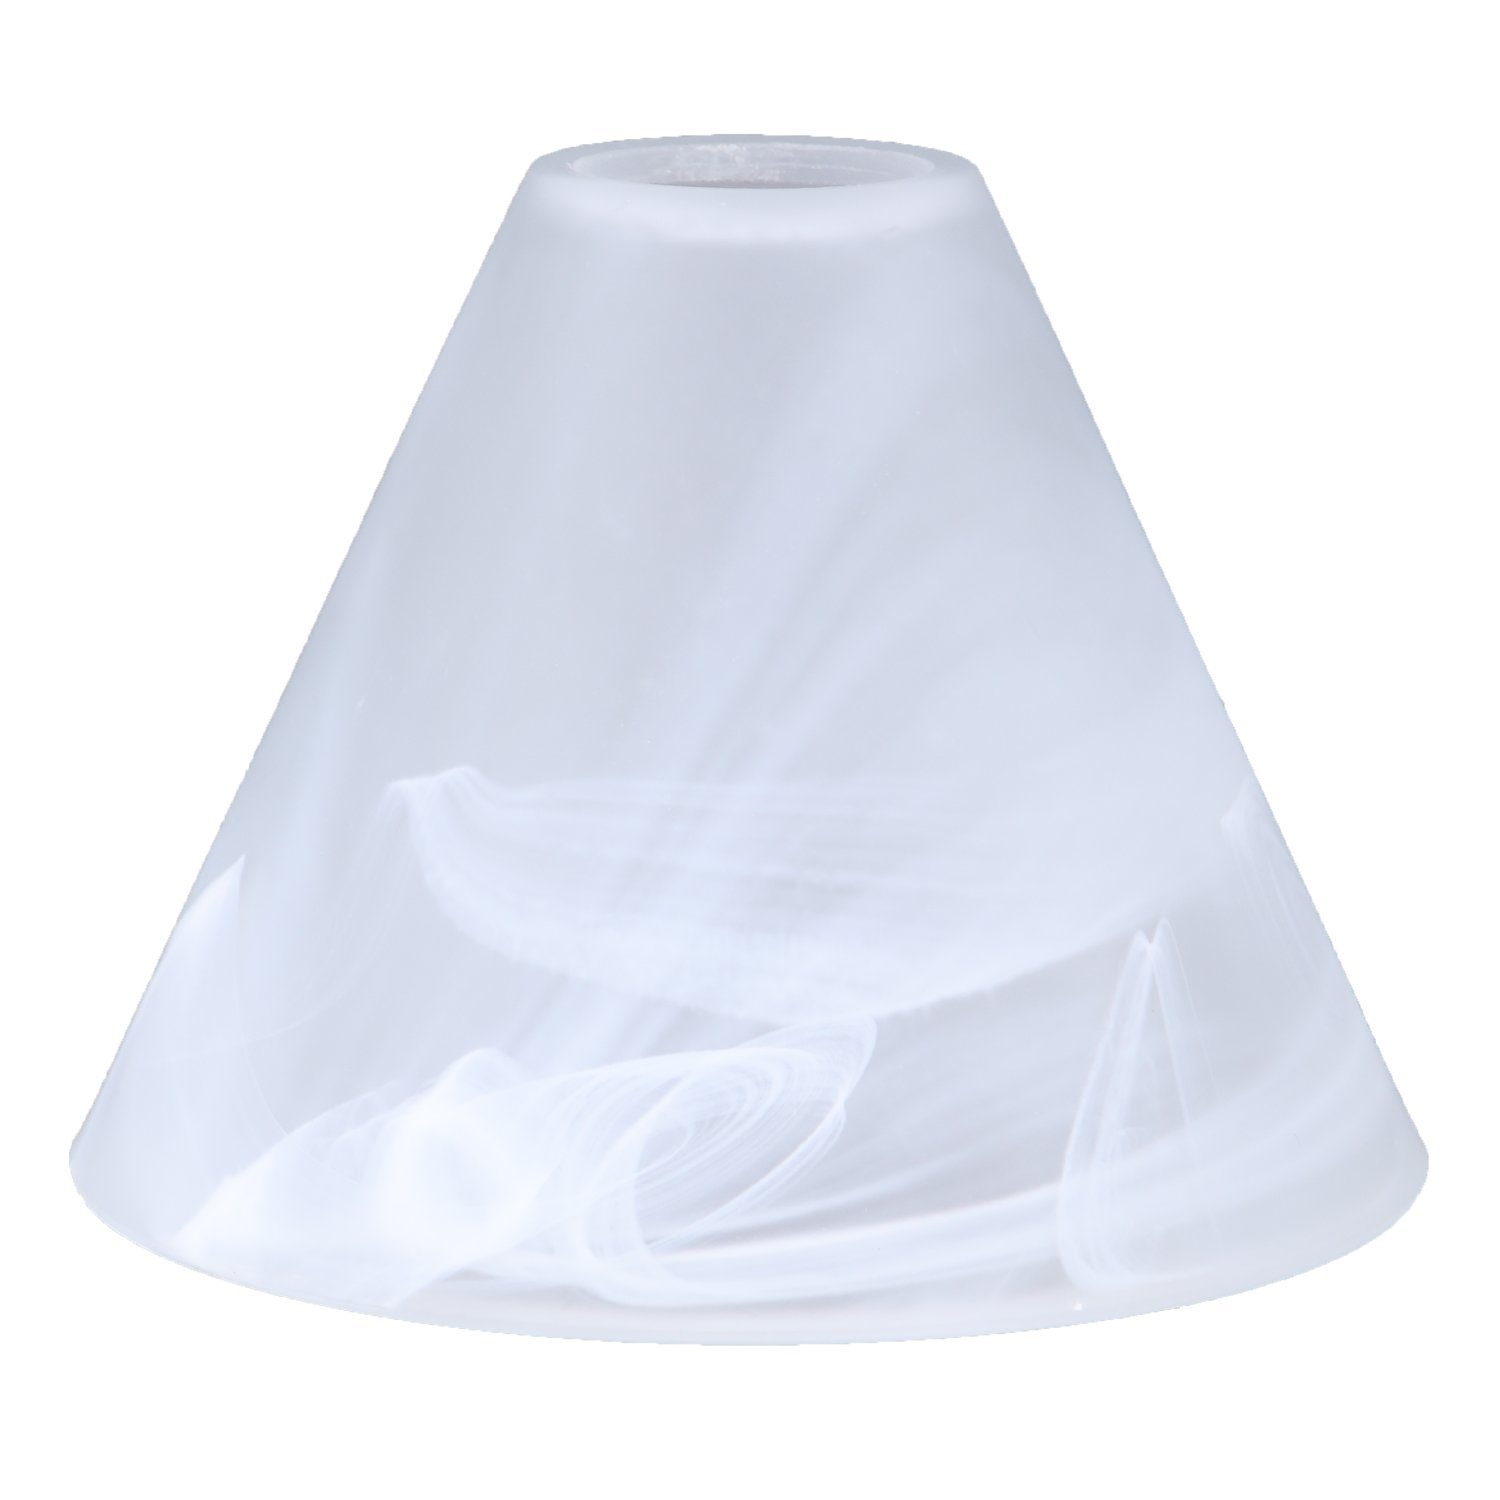 Home4Living Lampenschirm Alabasterglas weiß Ø 155mm Ersatzglas LampenglasE27, Dekorativ